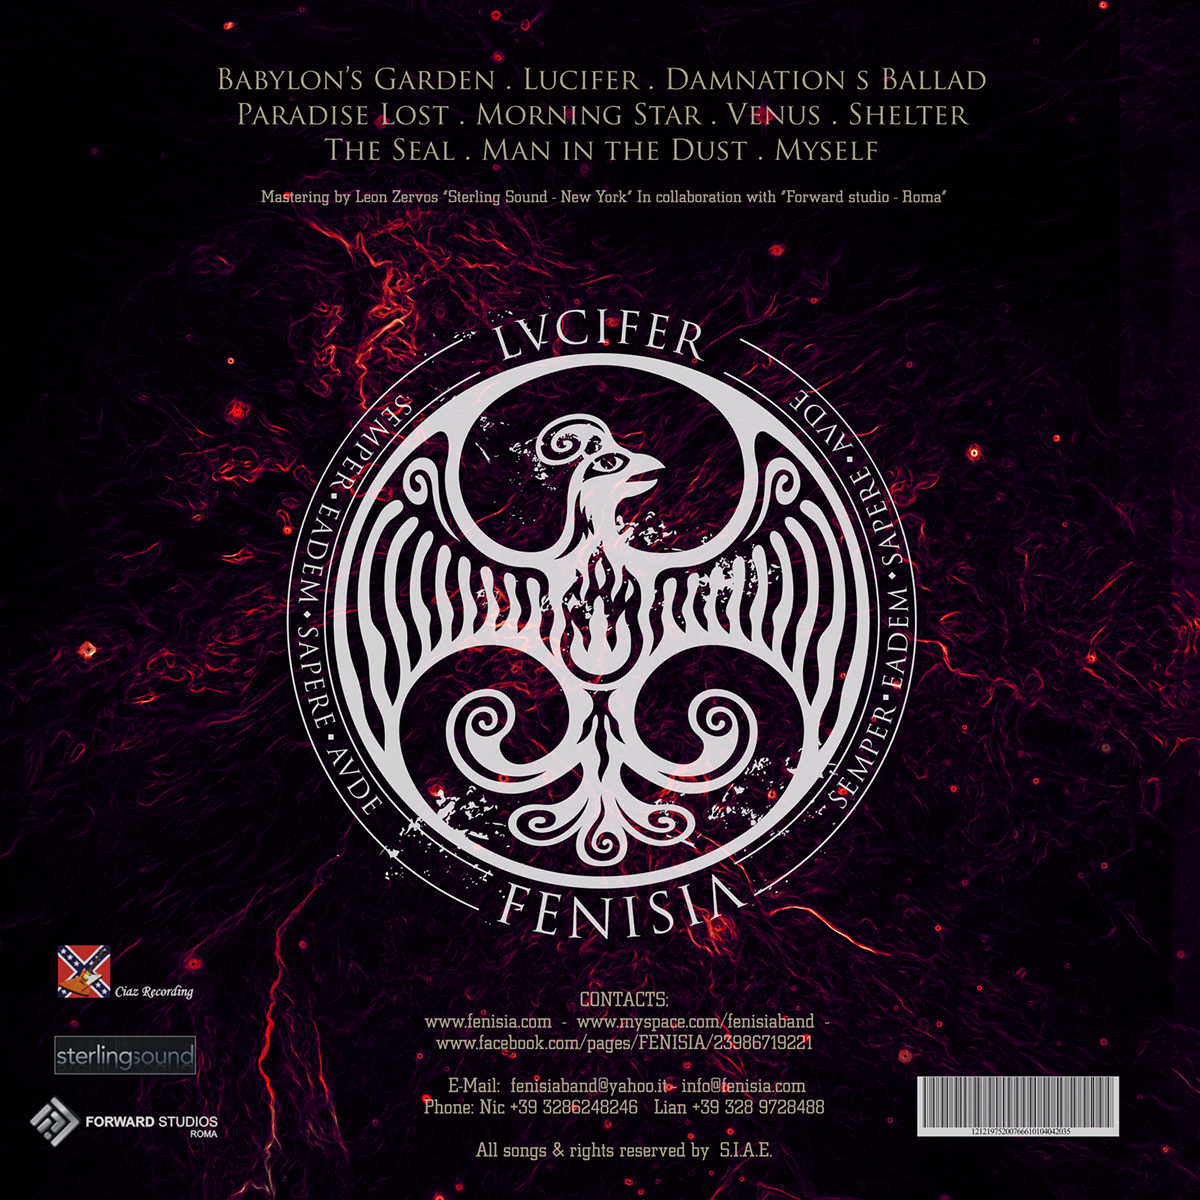 fenisia  lucifer  dario berardi  dario  berardi  Album cover  album  cover digital  digital art  art  red  VIOLET  blue  Black